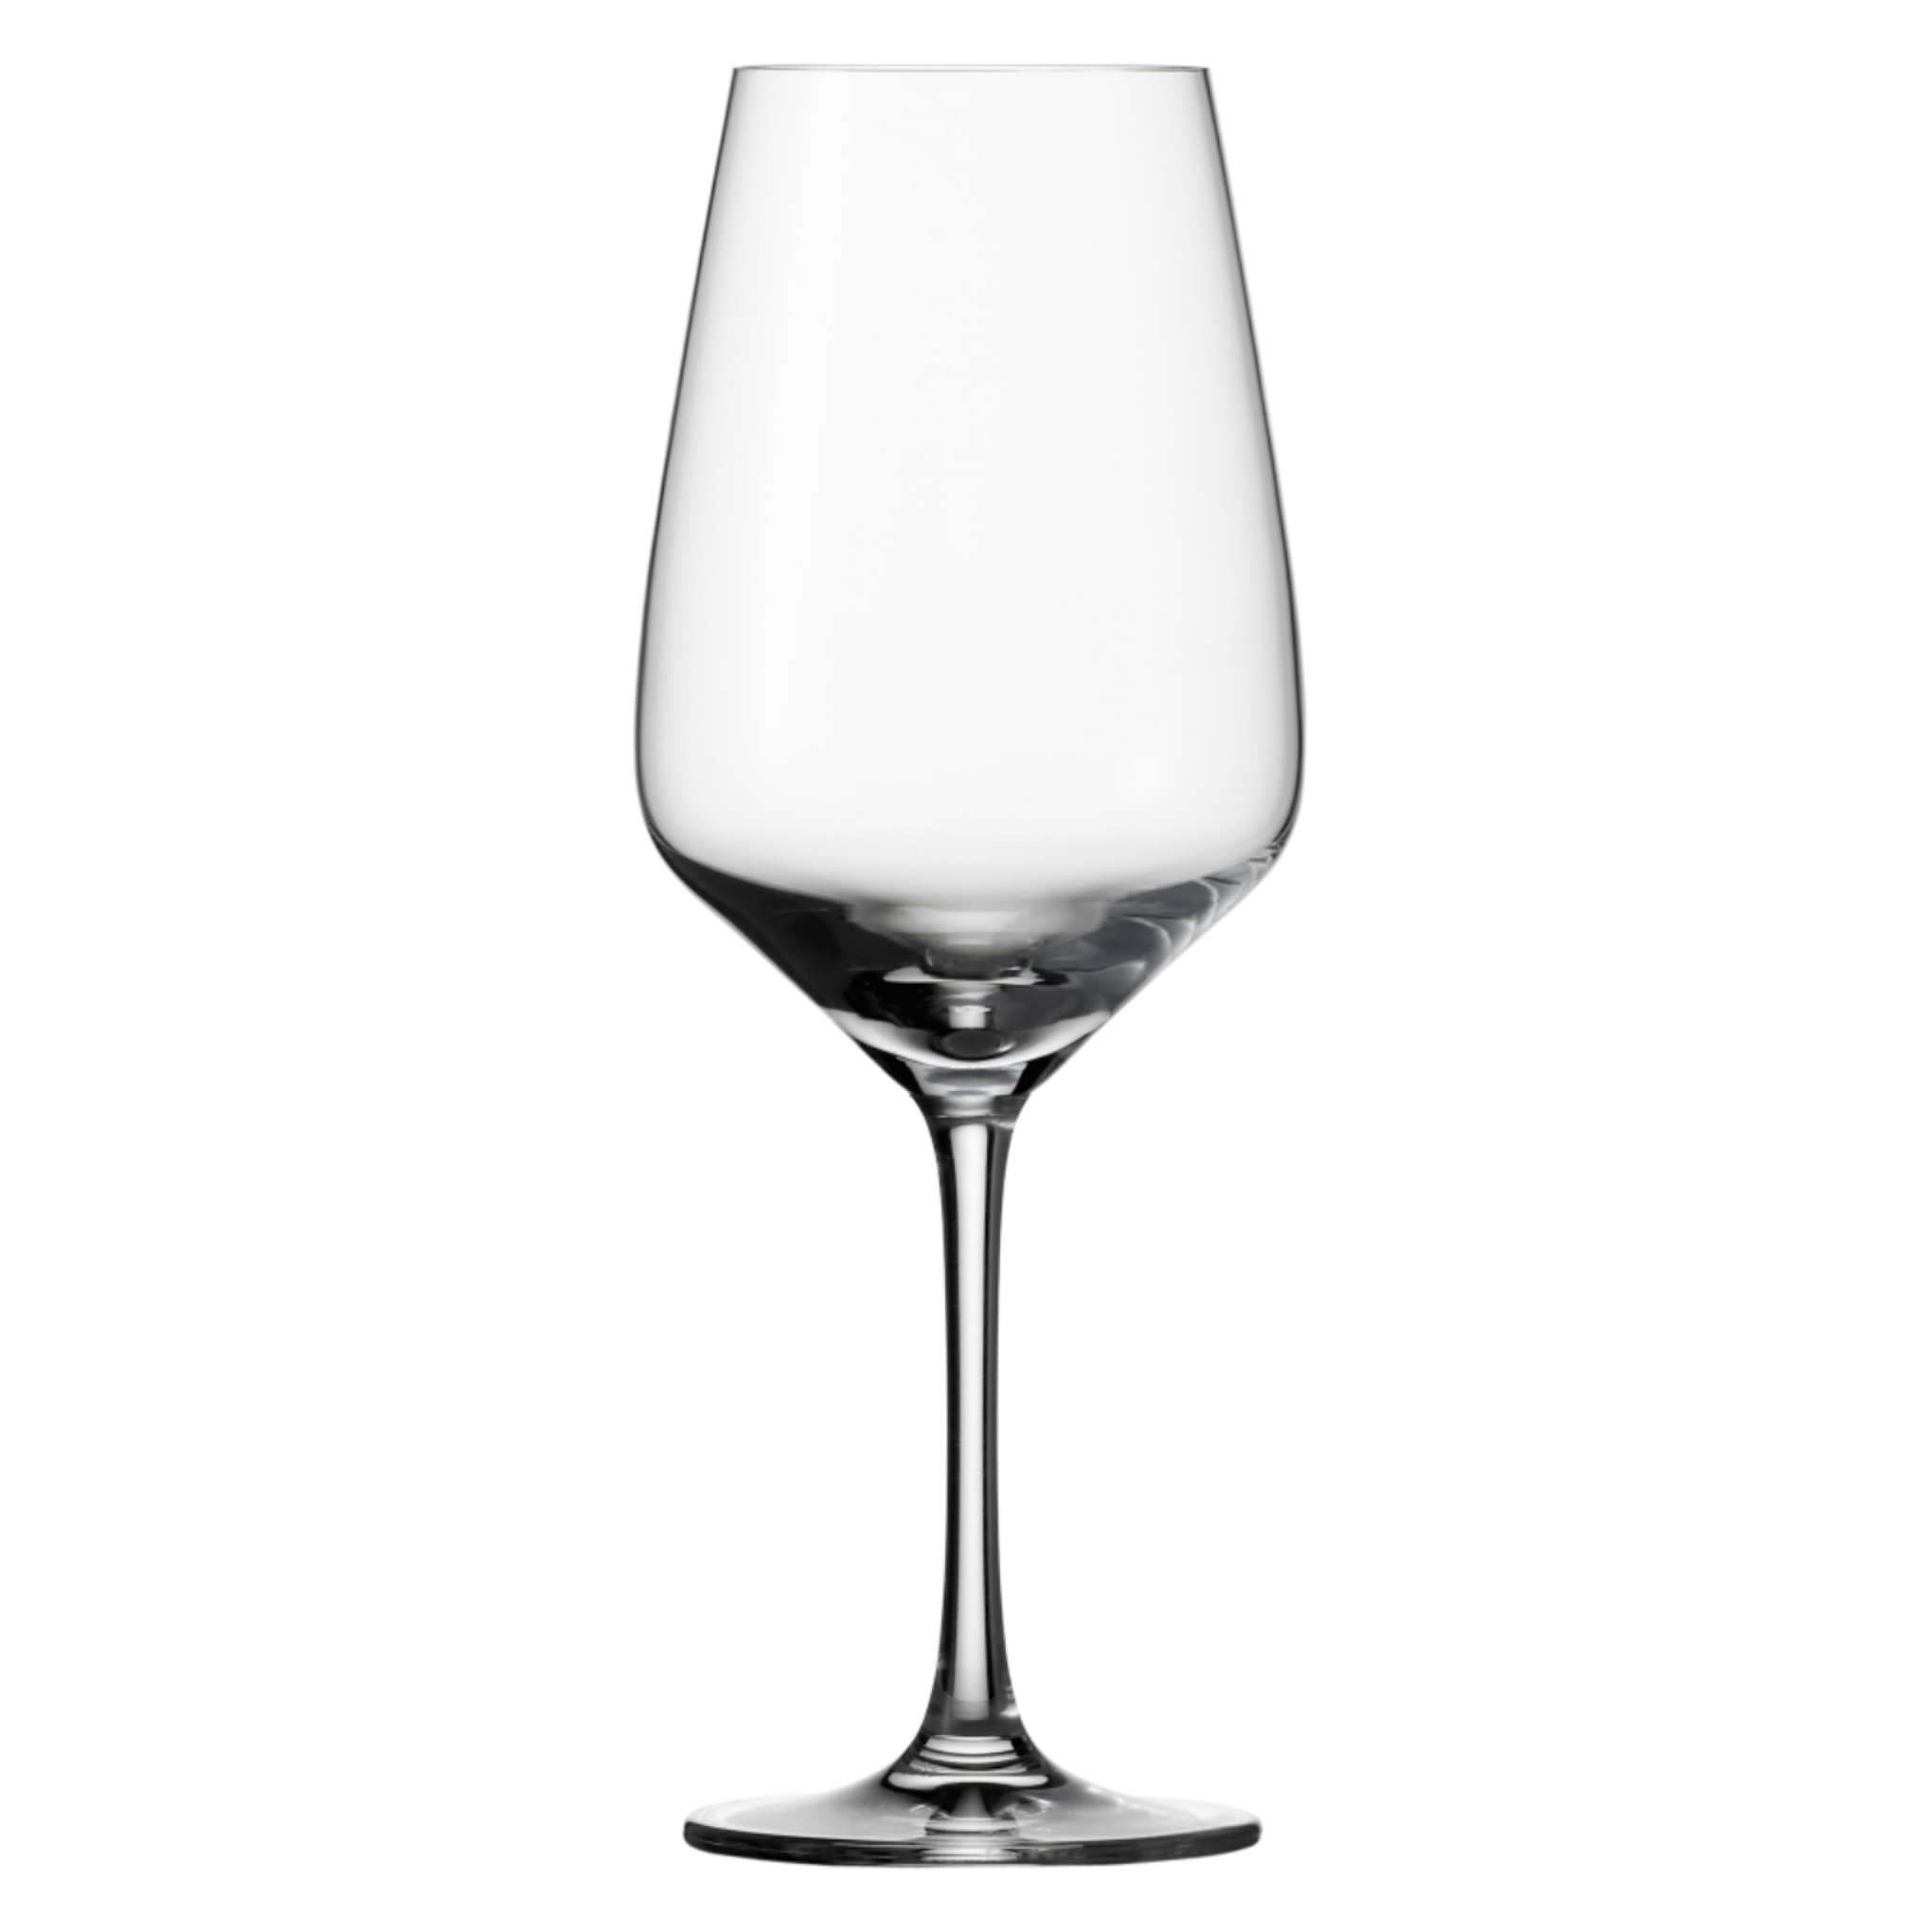 ik ben trots Artistiek Tientallen Schott Zwiesel Taste Rode wijnglas 0.5 Ltr (€ 5.75 per stuk) –  Viervriendenwijn